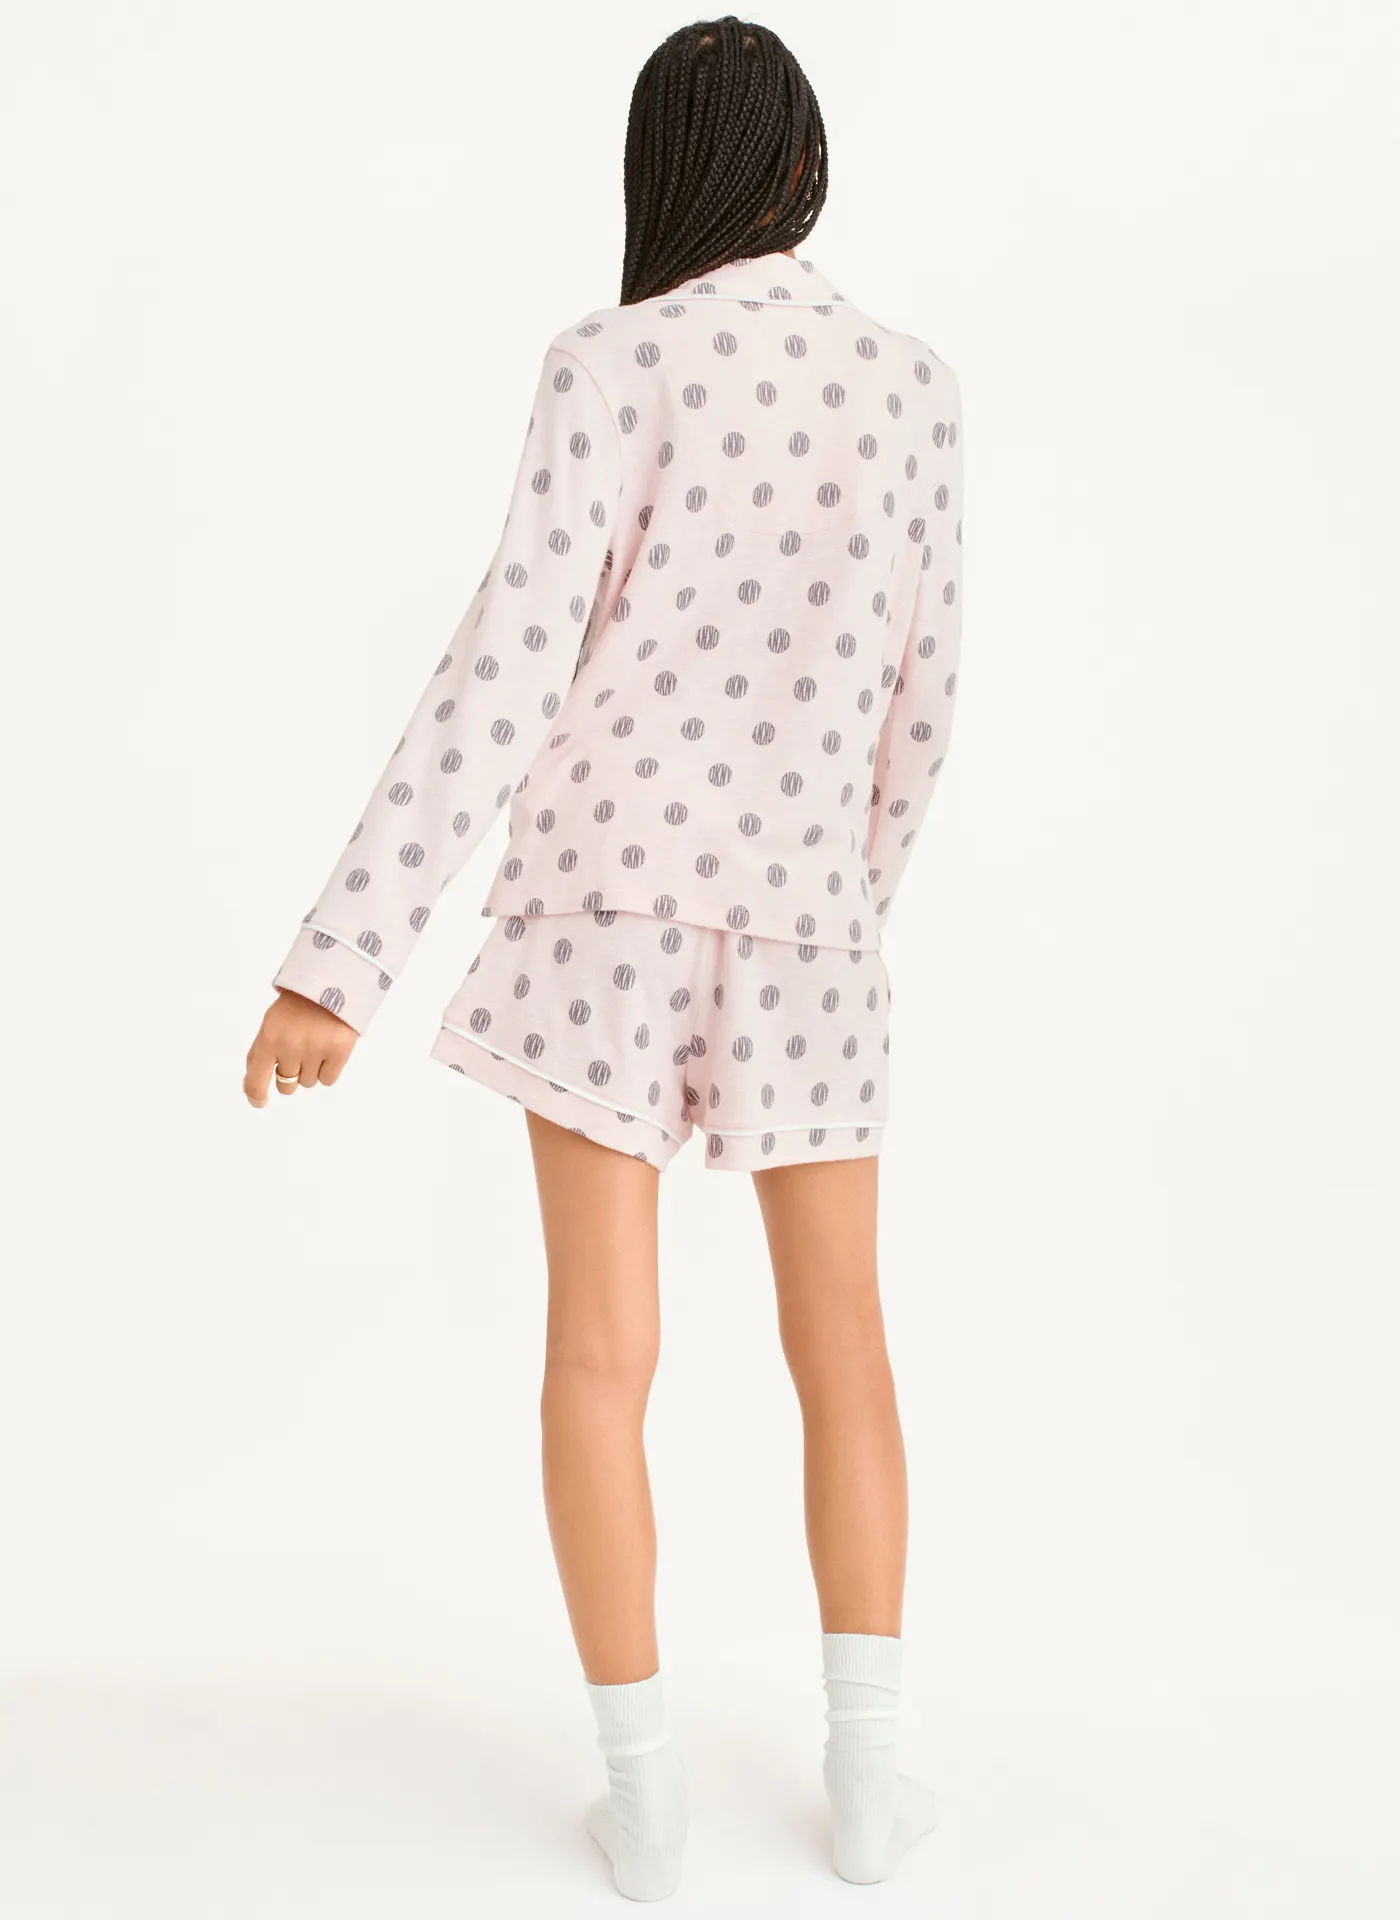 Пижама DKNY, шорты, рубашка, длинный рукав, пояс на резинке, карманы, размер L, розовый - фотография № 2